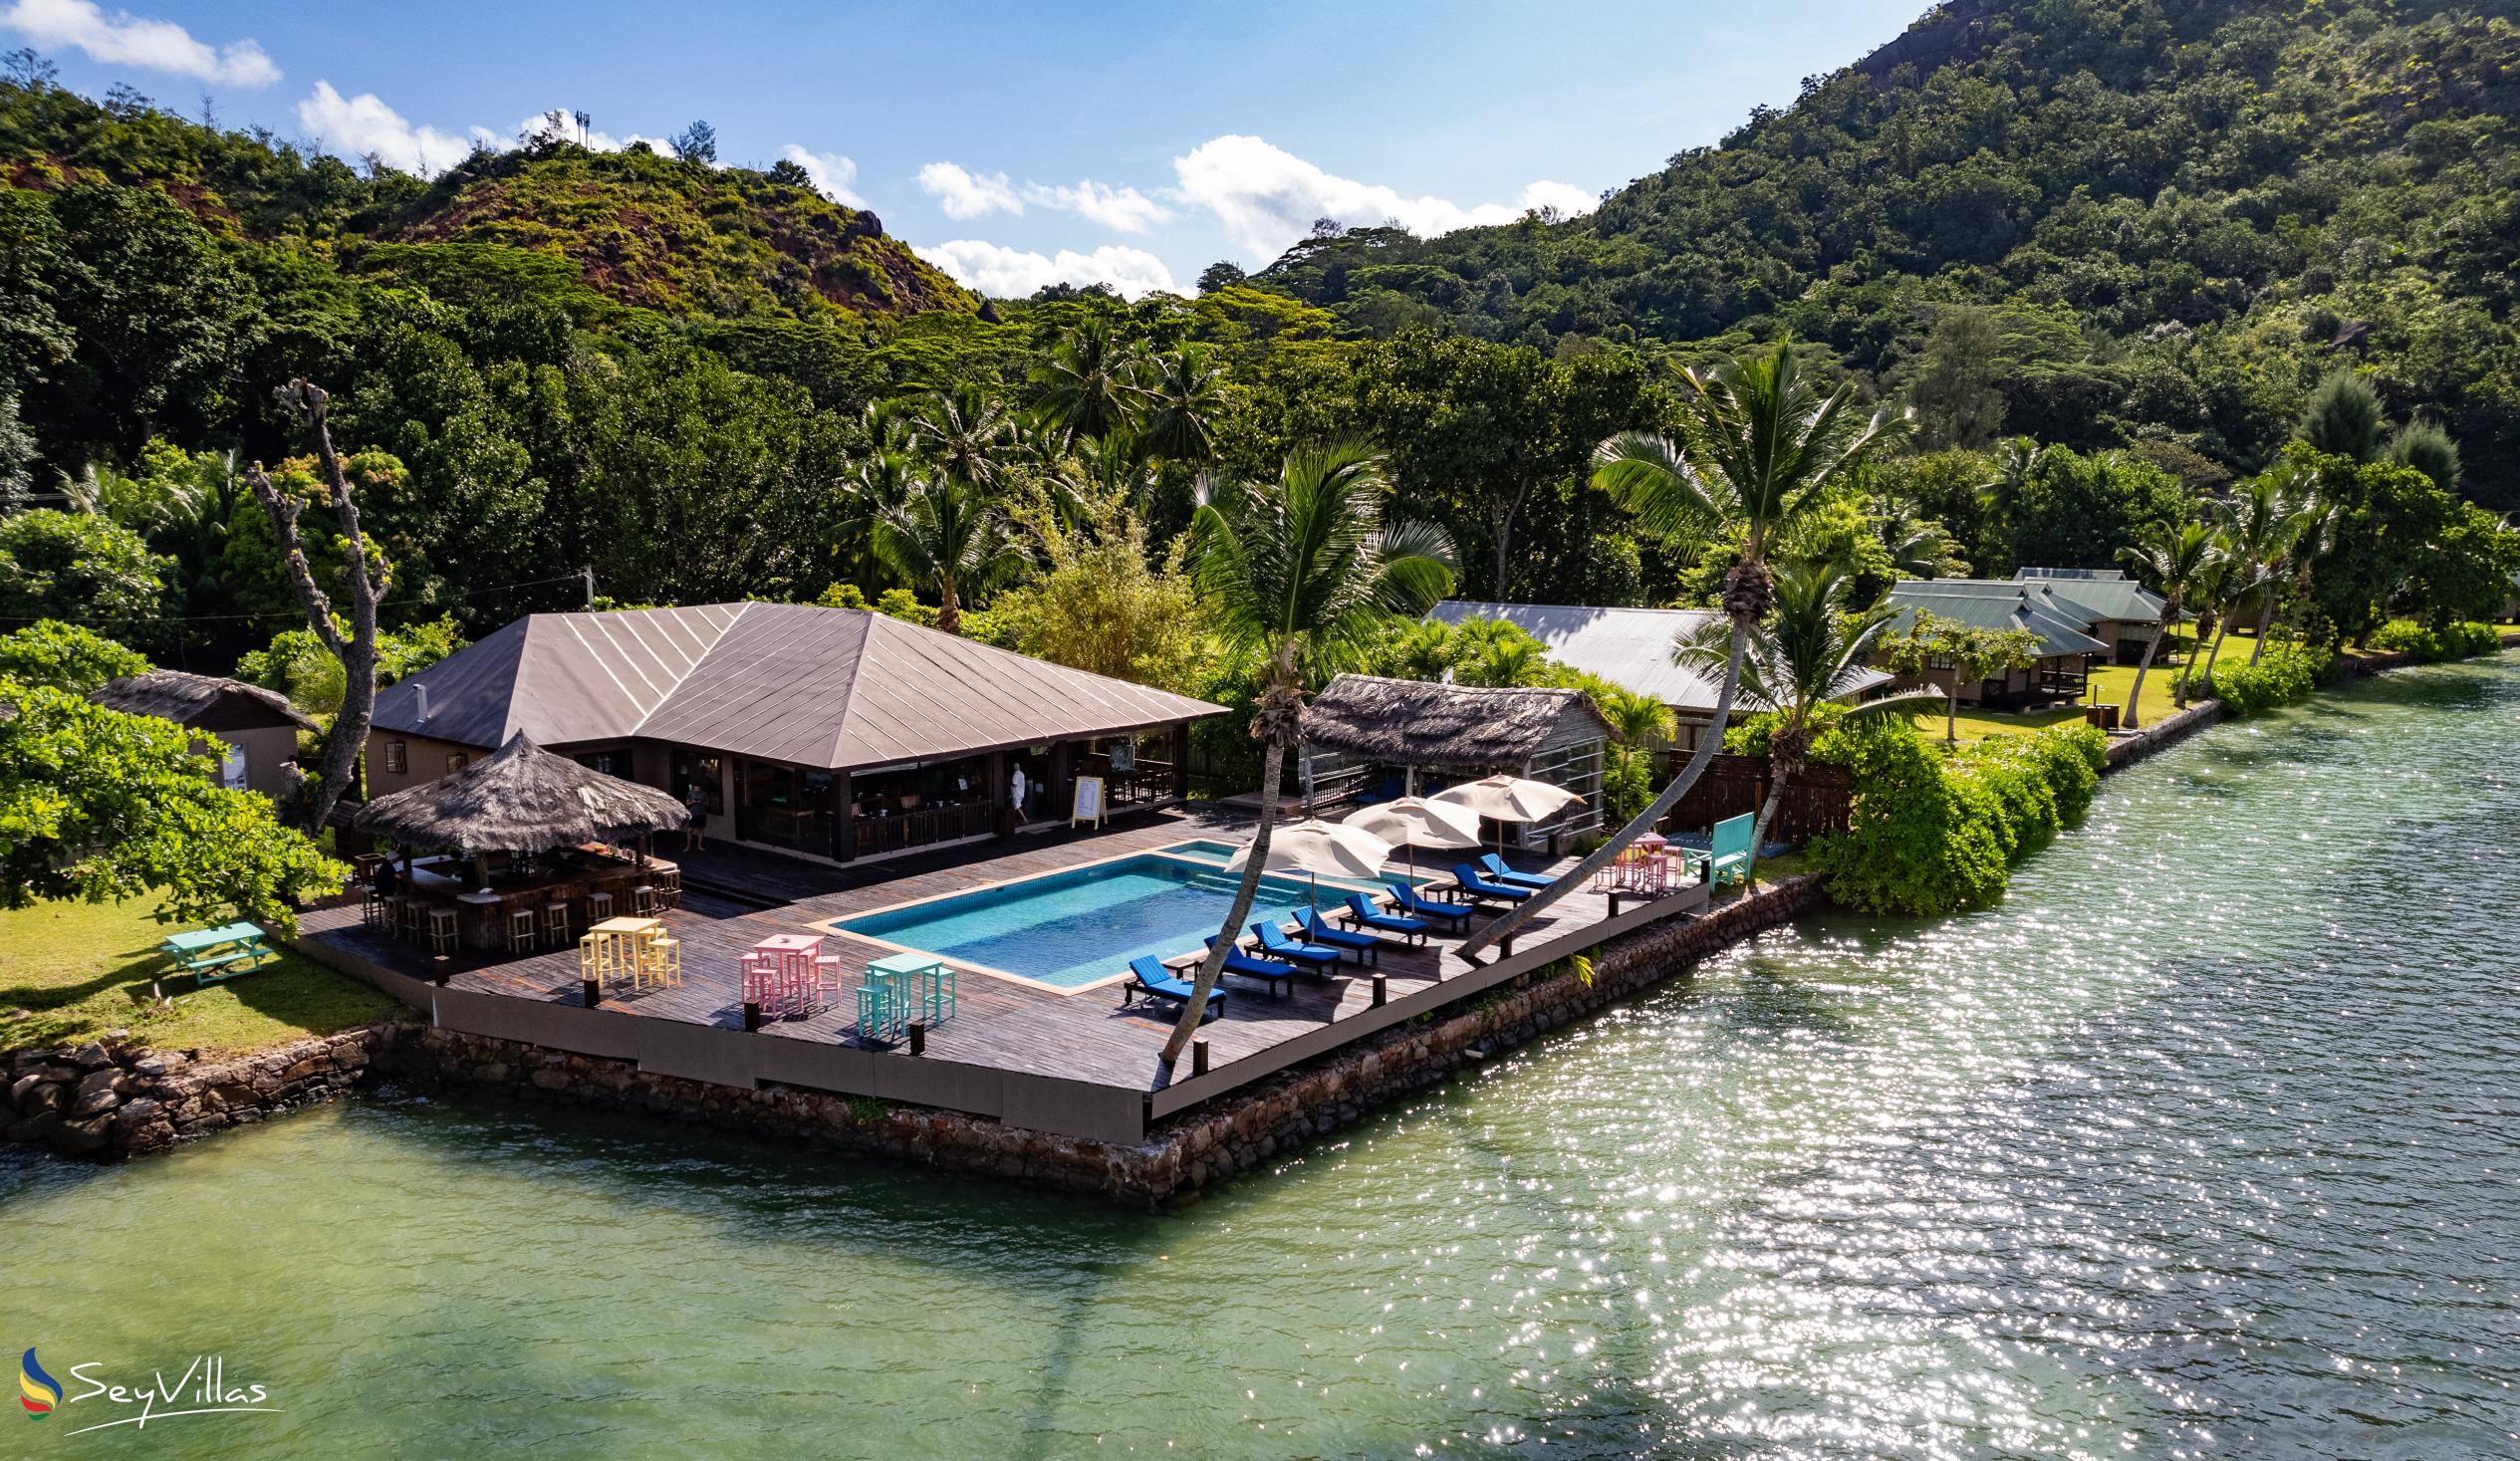 Photo 1: Le Vasseur La Buse Eco Resort - Outdoor area - Praslin (Seychelles)